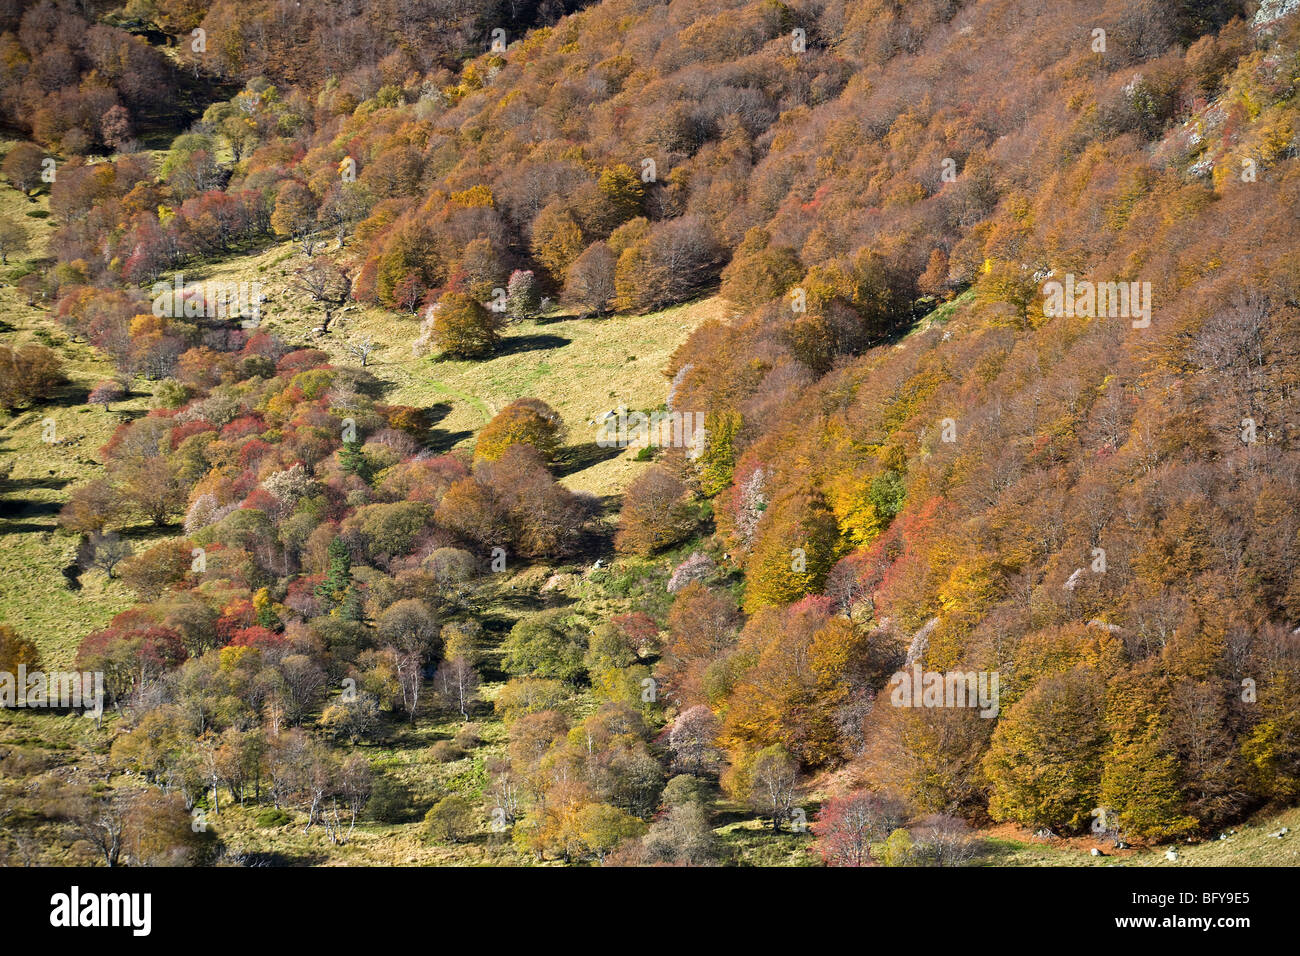 La valle di Chaudefour e il suo faggio (Fagus sylvatica) foresta in autunno (Puy de Dôme - Auvergne - Francia). Foto Stock